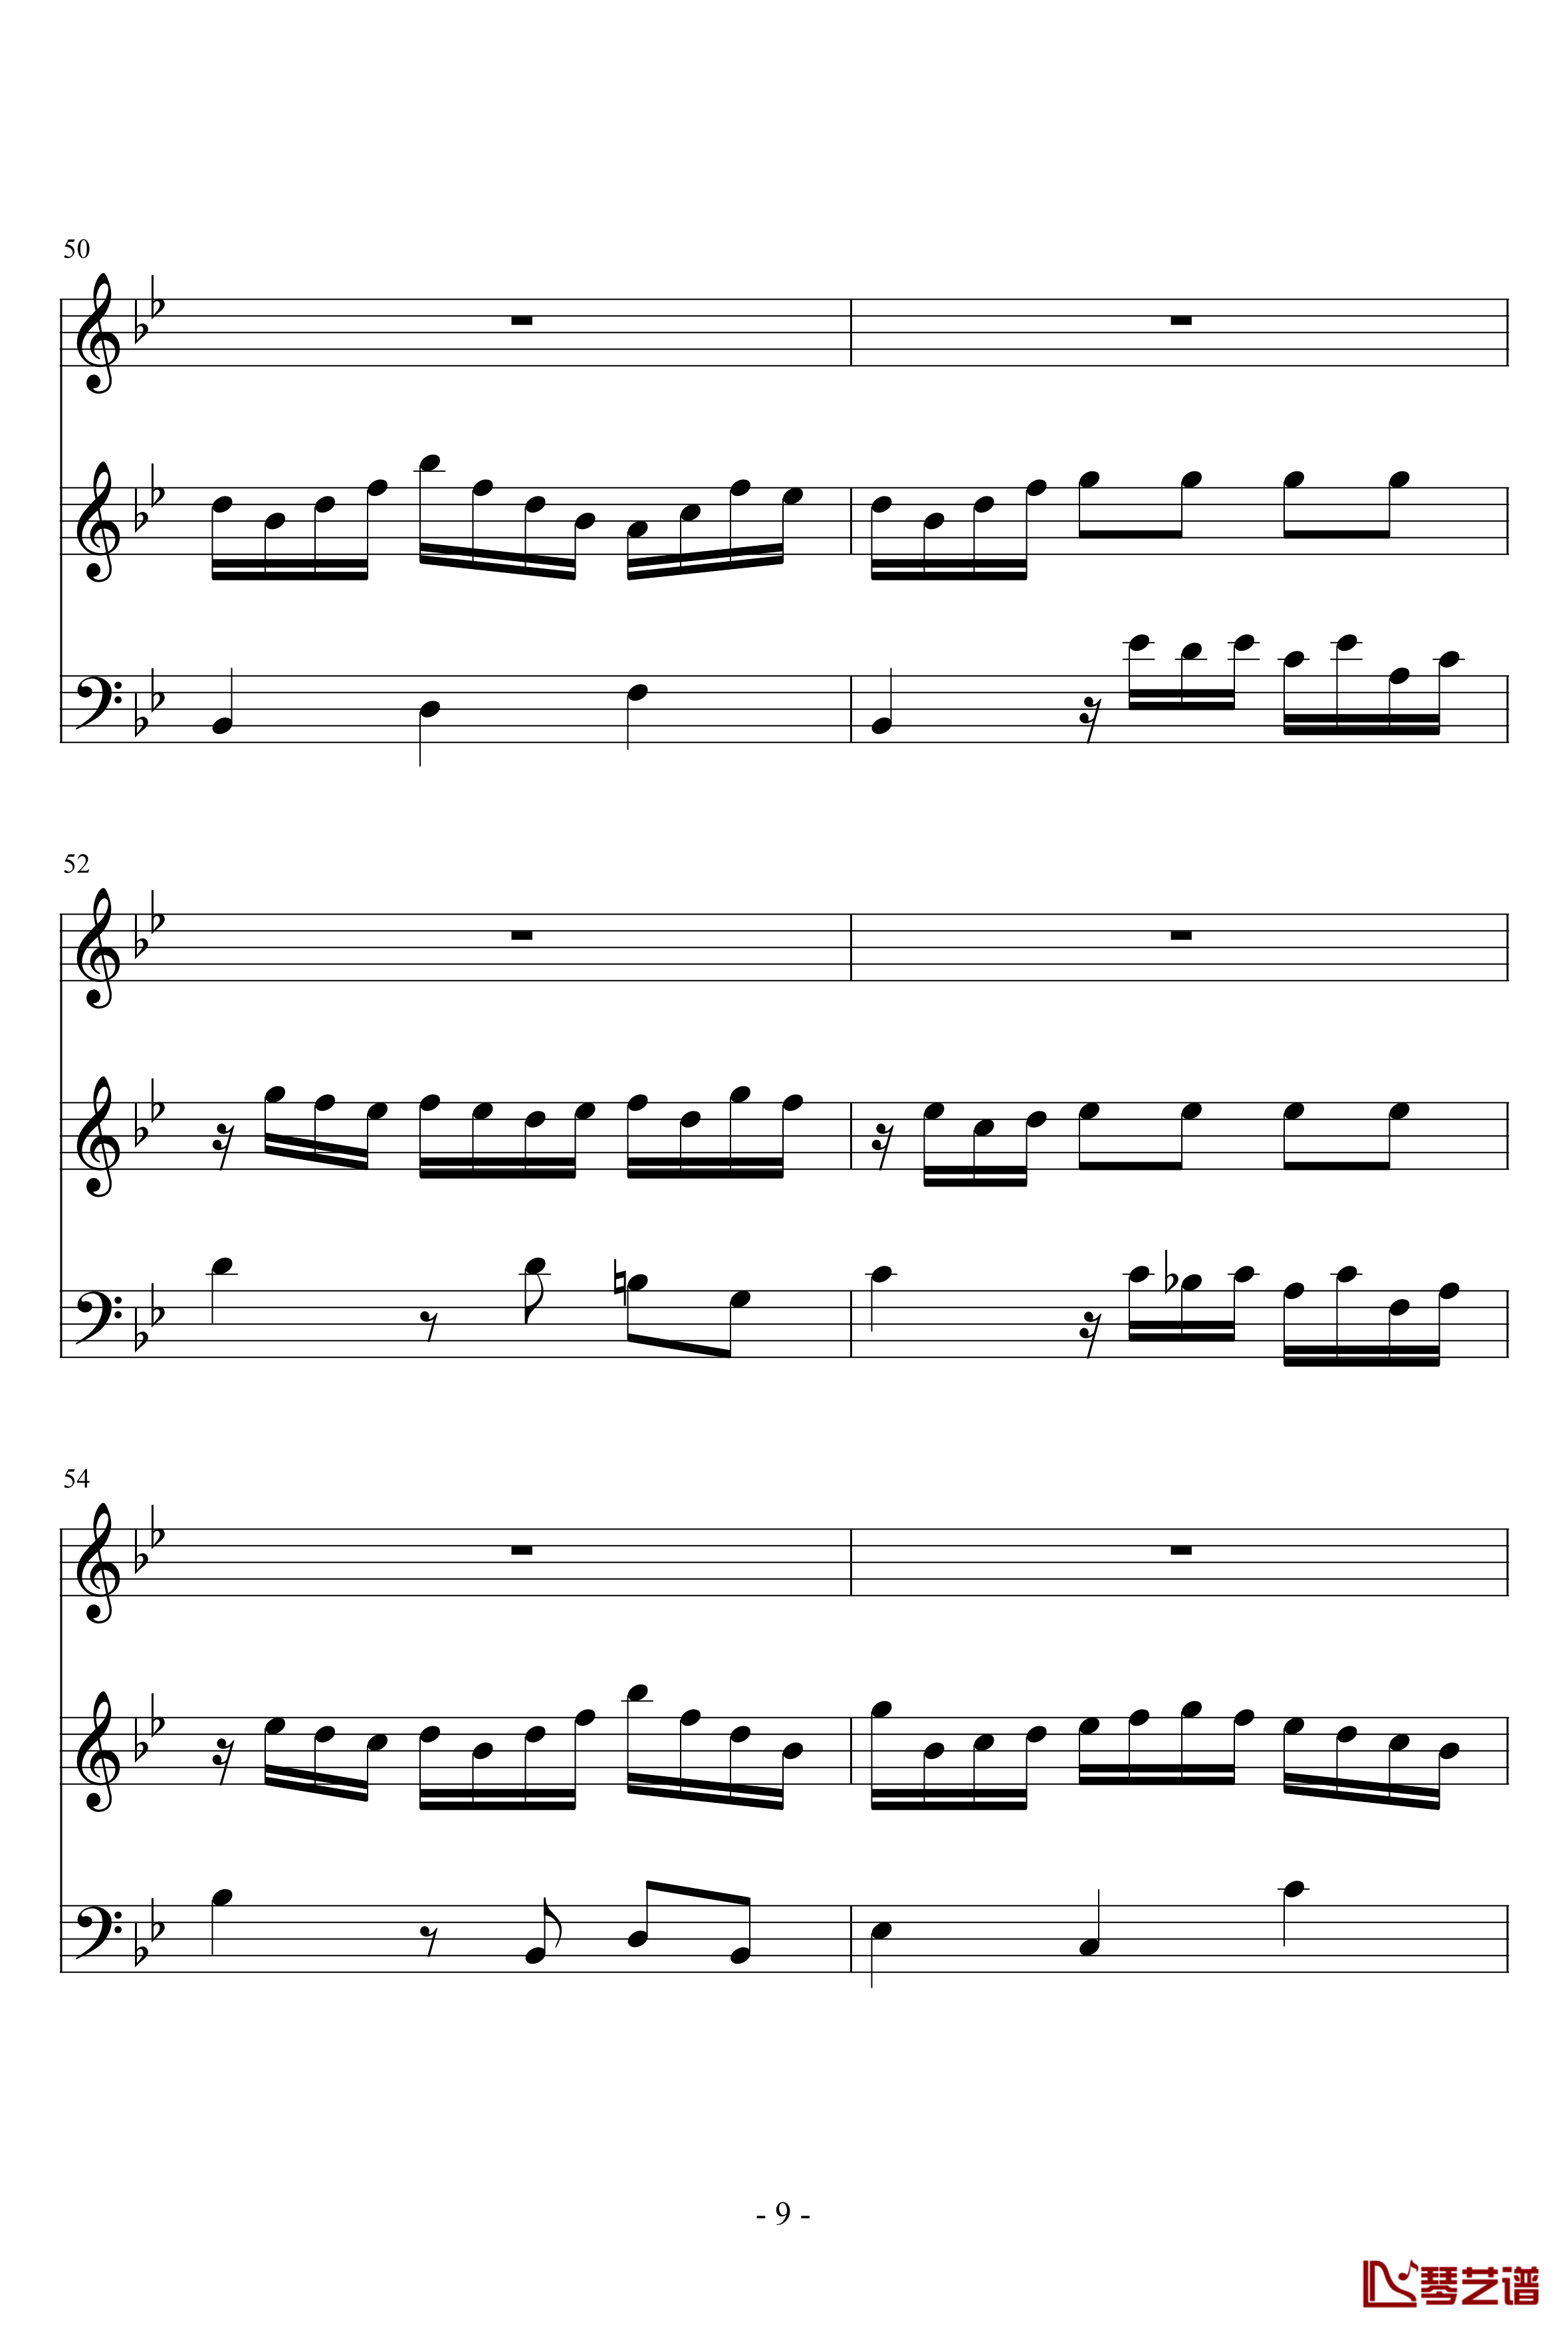 长笛与羽管键琴奏鸣曲第一乐章钢琴谱-巴赫-P.E.Bach9